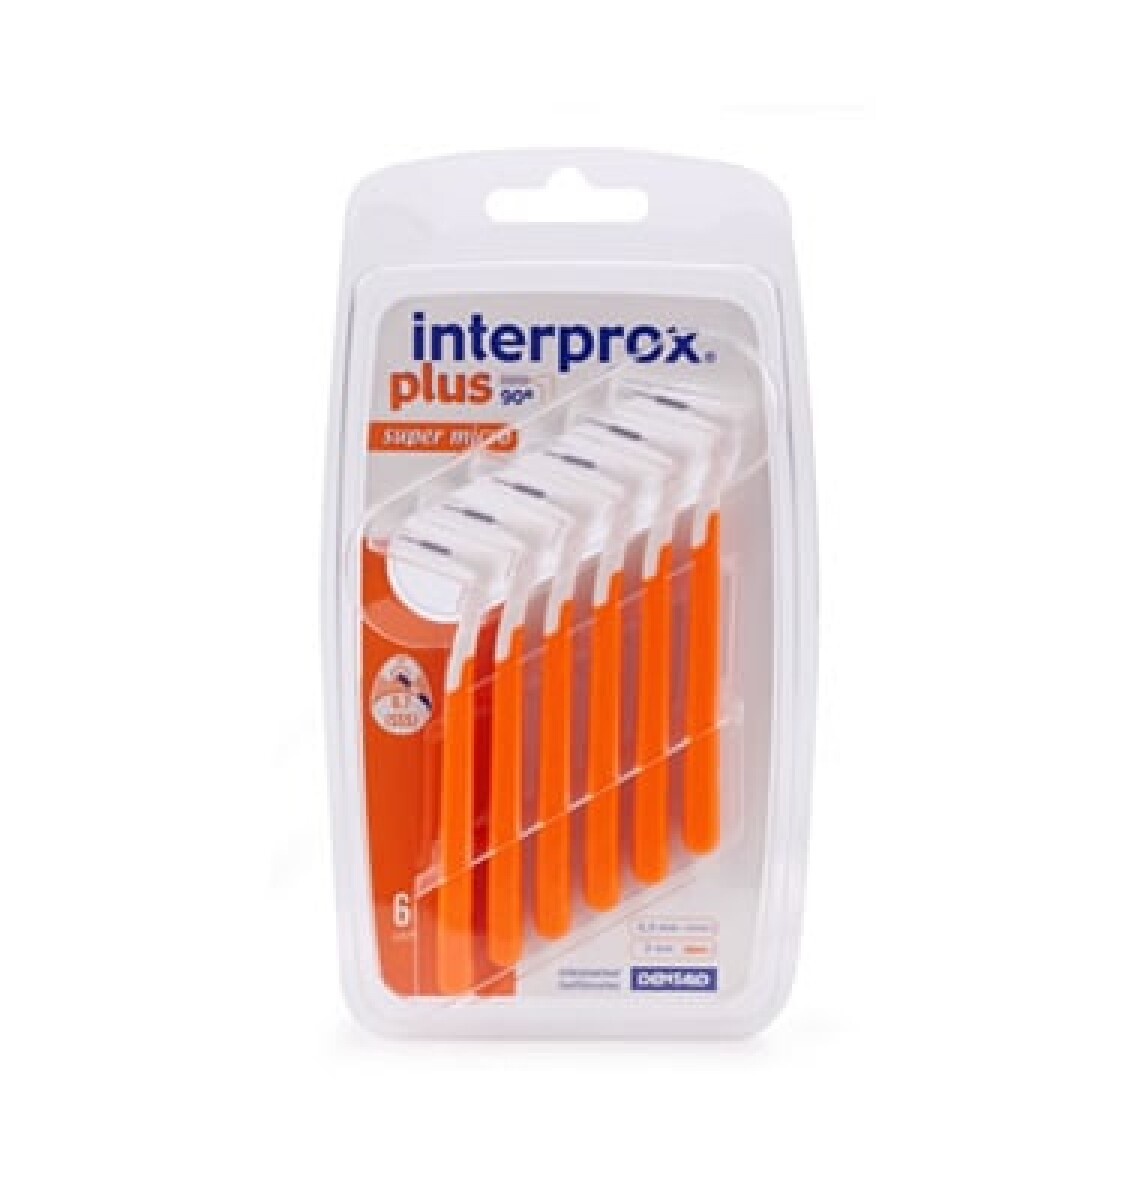 Interprox Cepillo Plus Super Micro 